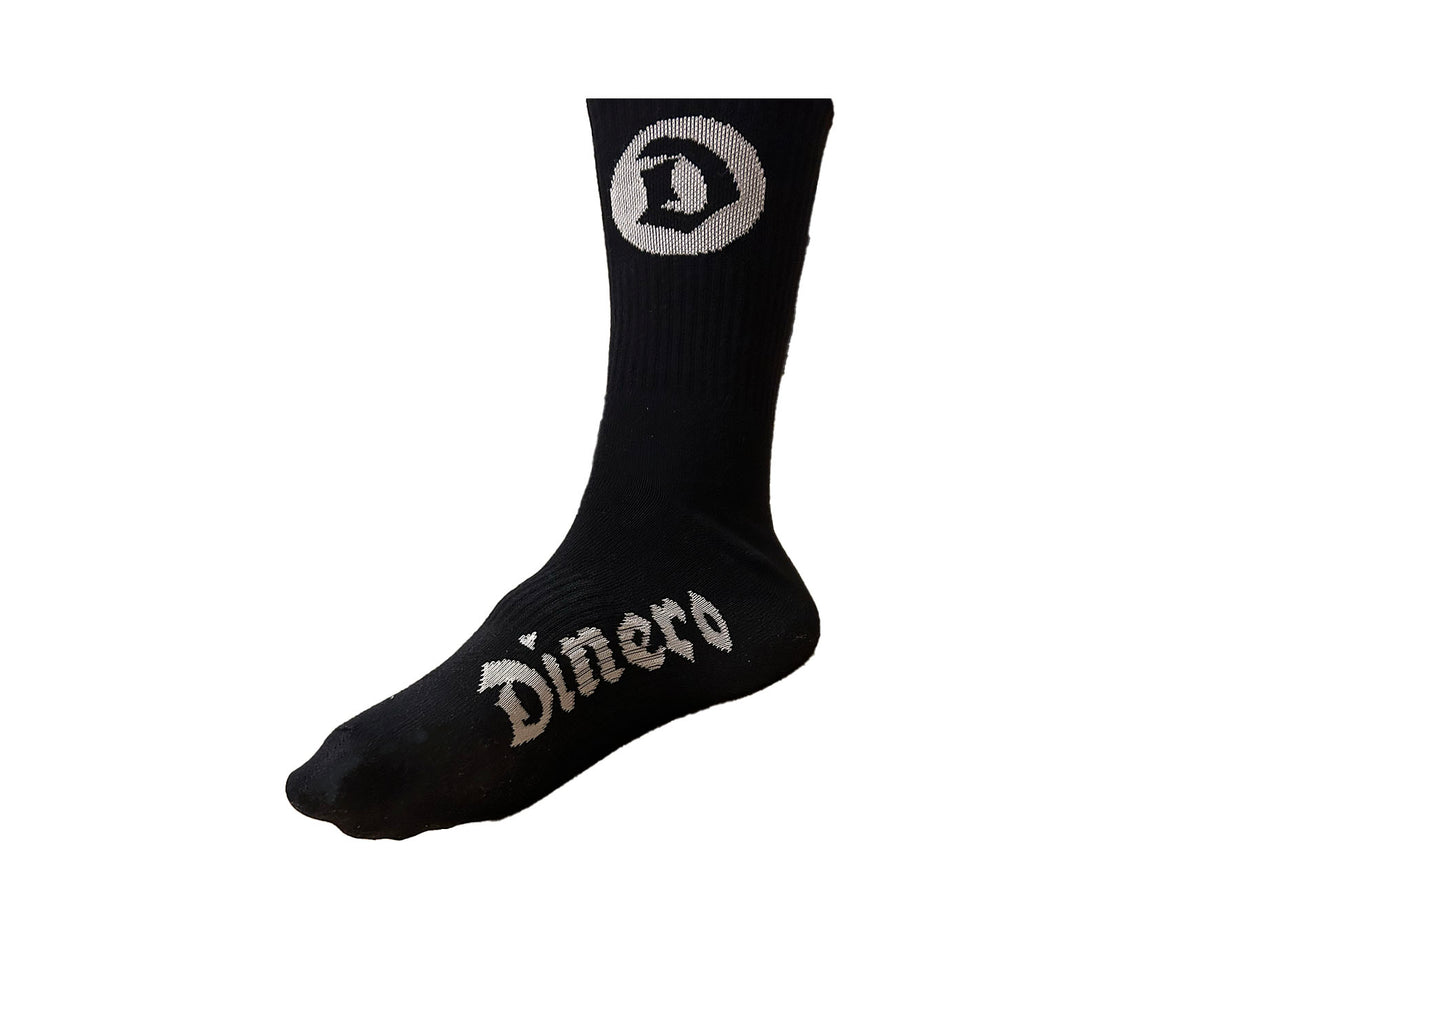 DINERO Socken 3er Pack